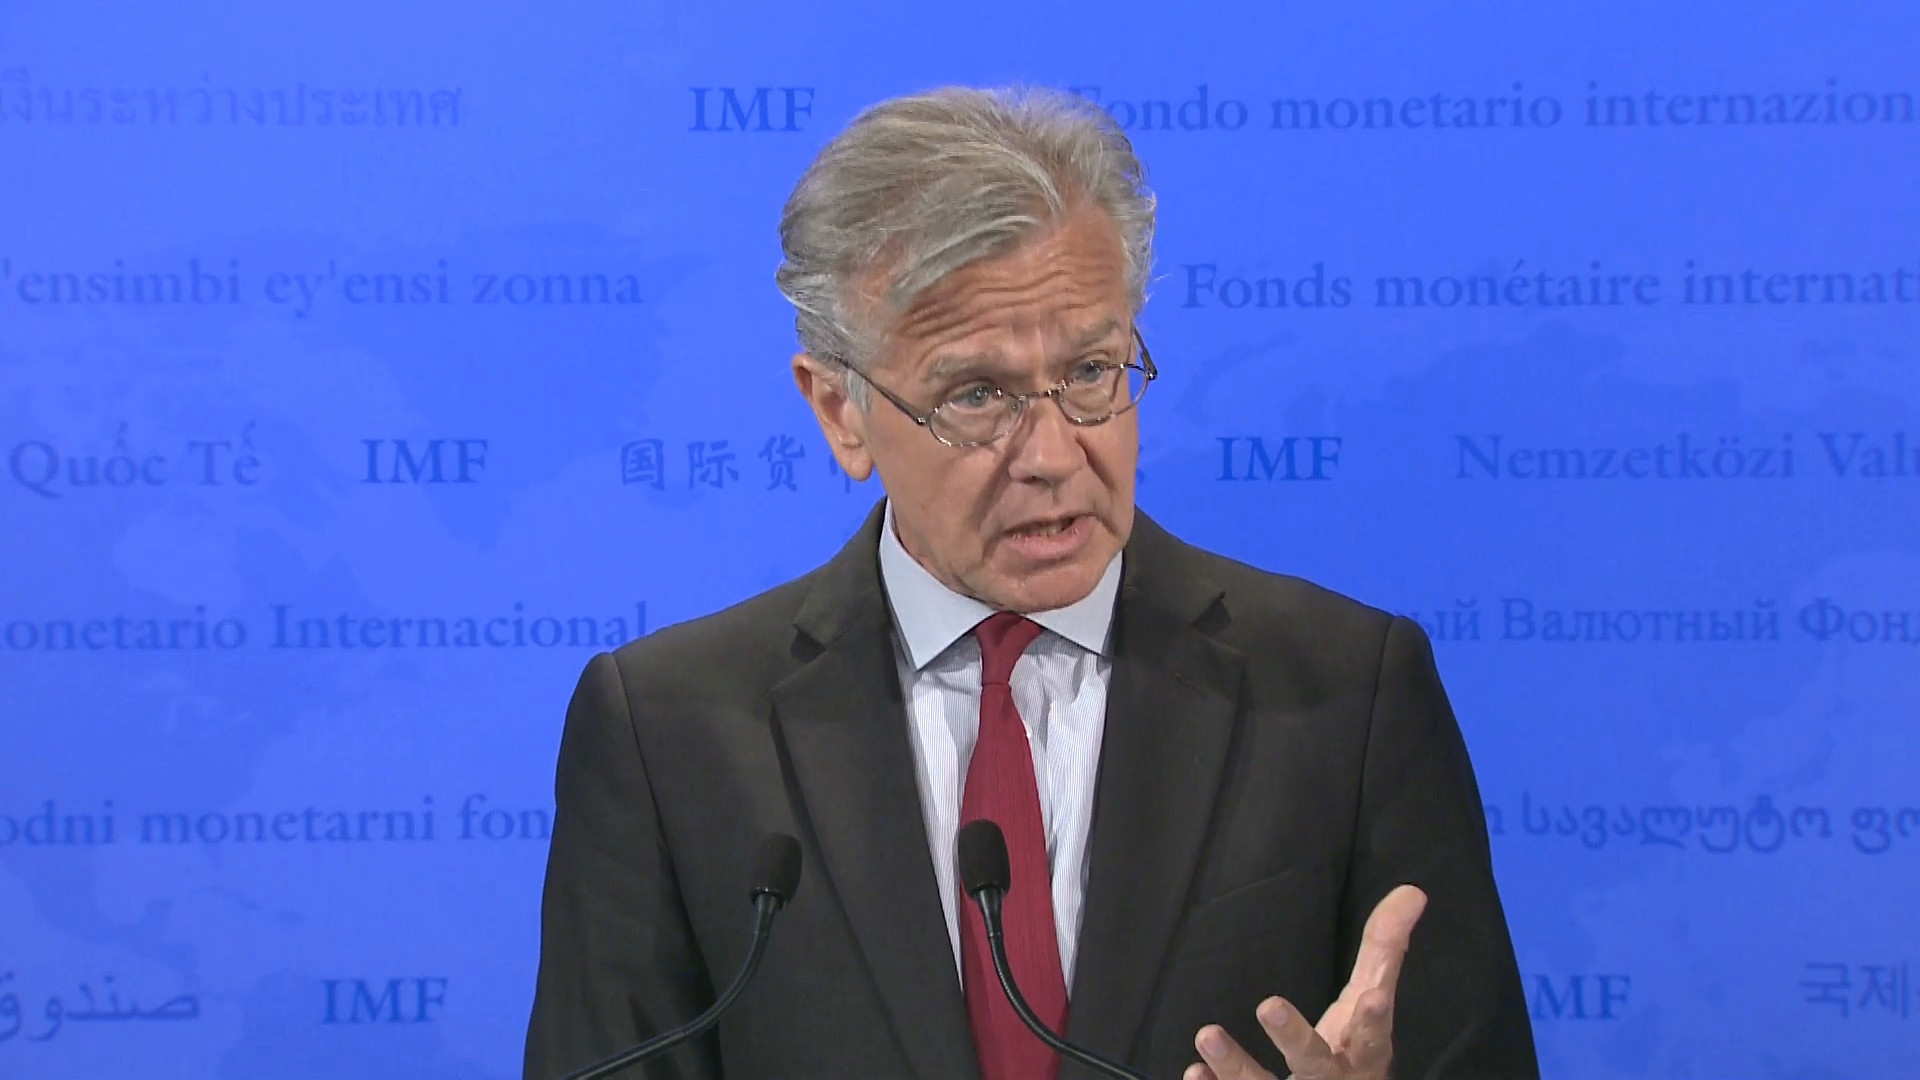 Εκπρόσωπος ΔΝΤ: Δεν υπάρχει διχογνωμία στο Ταμείο για την Ελλάδα